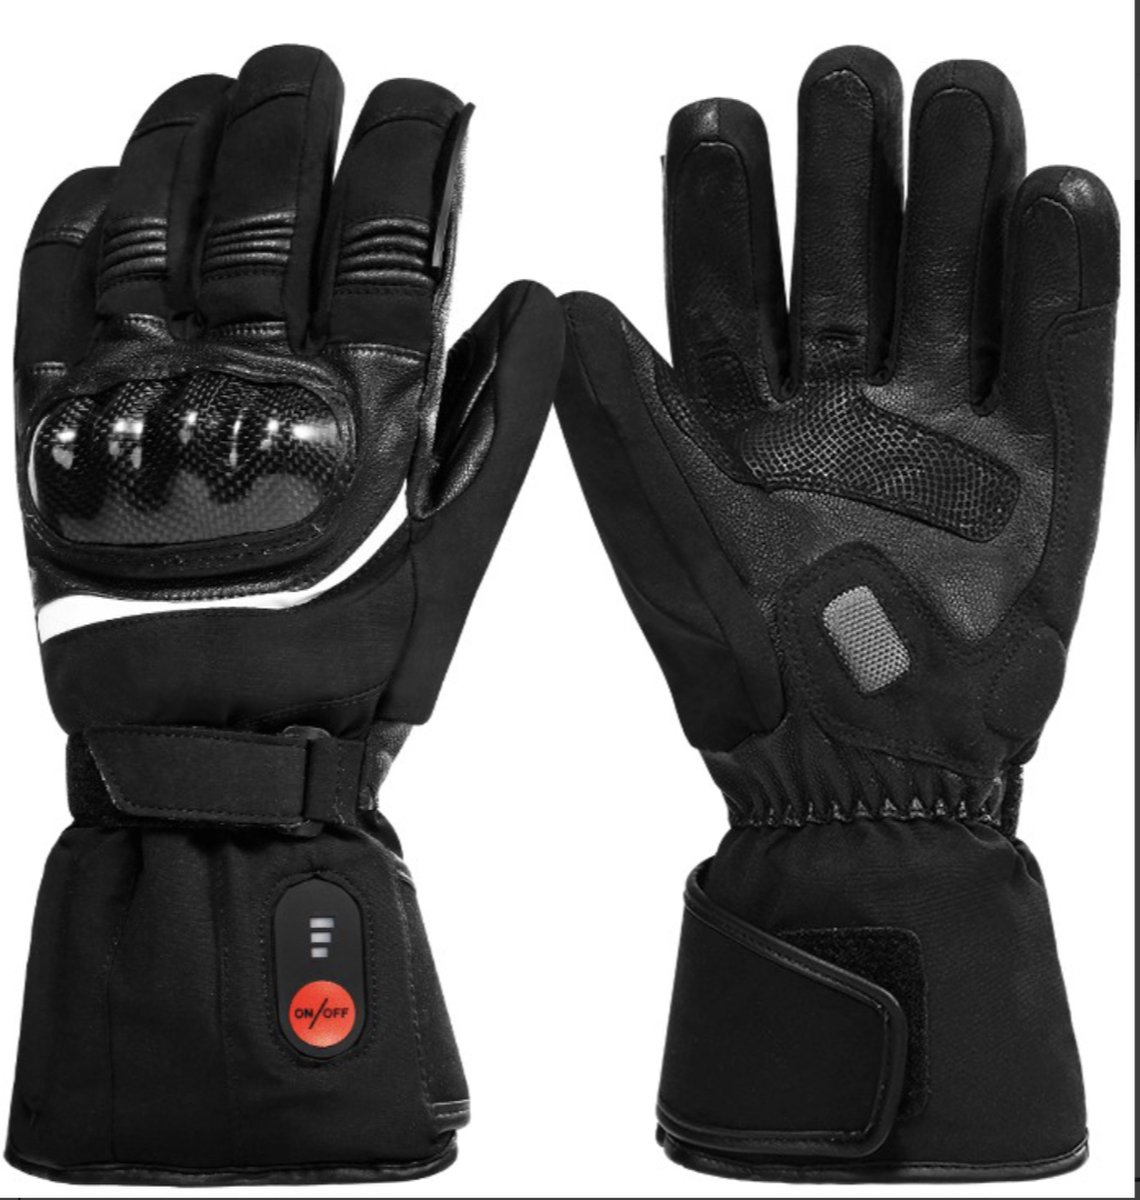 JuKa Rossi Heat - Elektrisch verwarmde motorhandschoenen - Oplaadbare Accu met kabel - Heated gloves - Unisex - Zwart - Winter